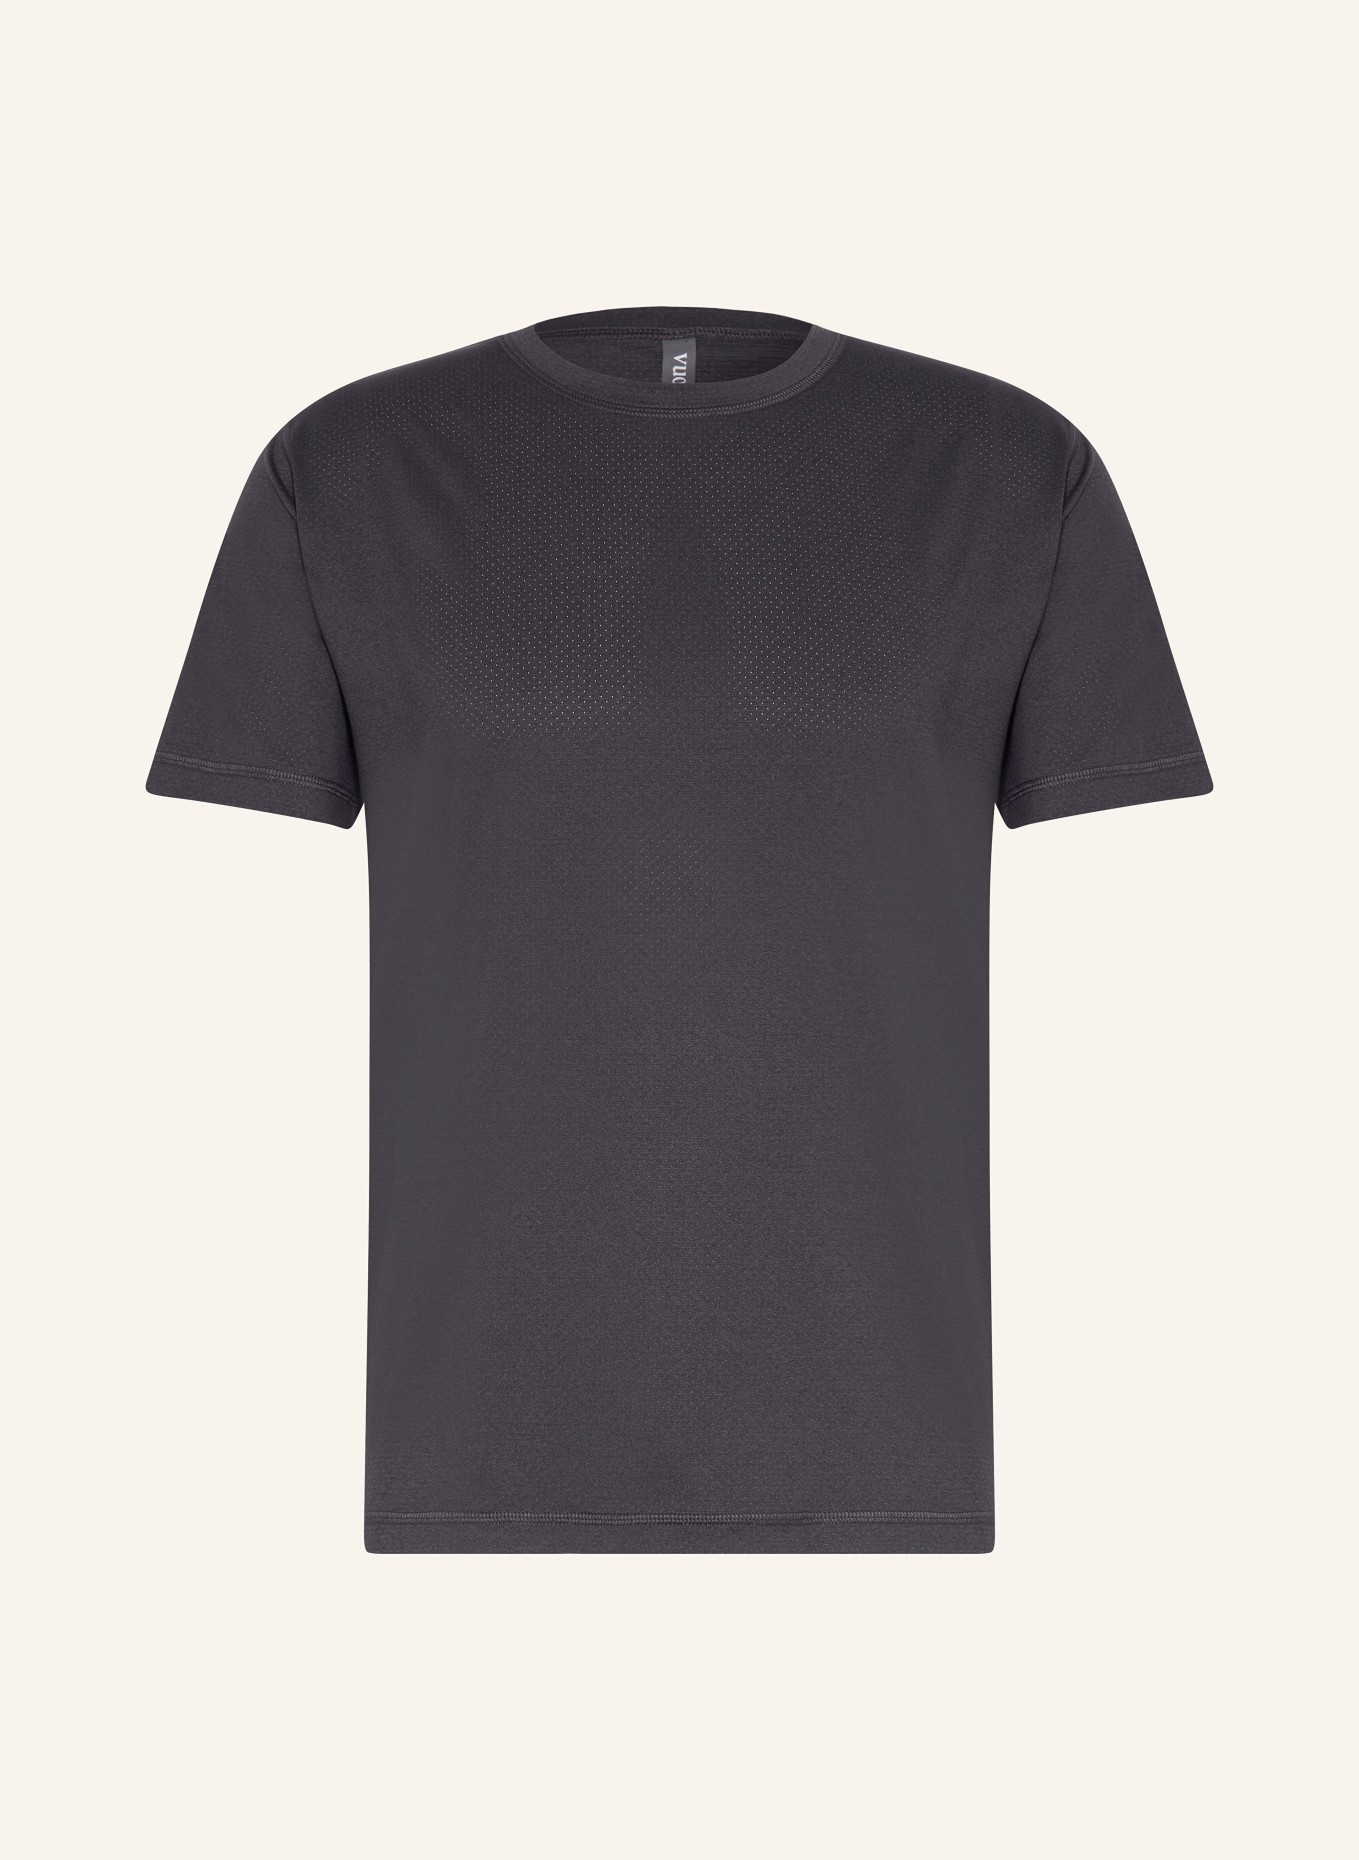 vuori T-Shirt TRADEWIND PERFORMANCE 2.0, Farbe: HBK Black Heather (Bild 1)